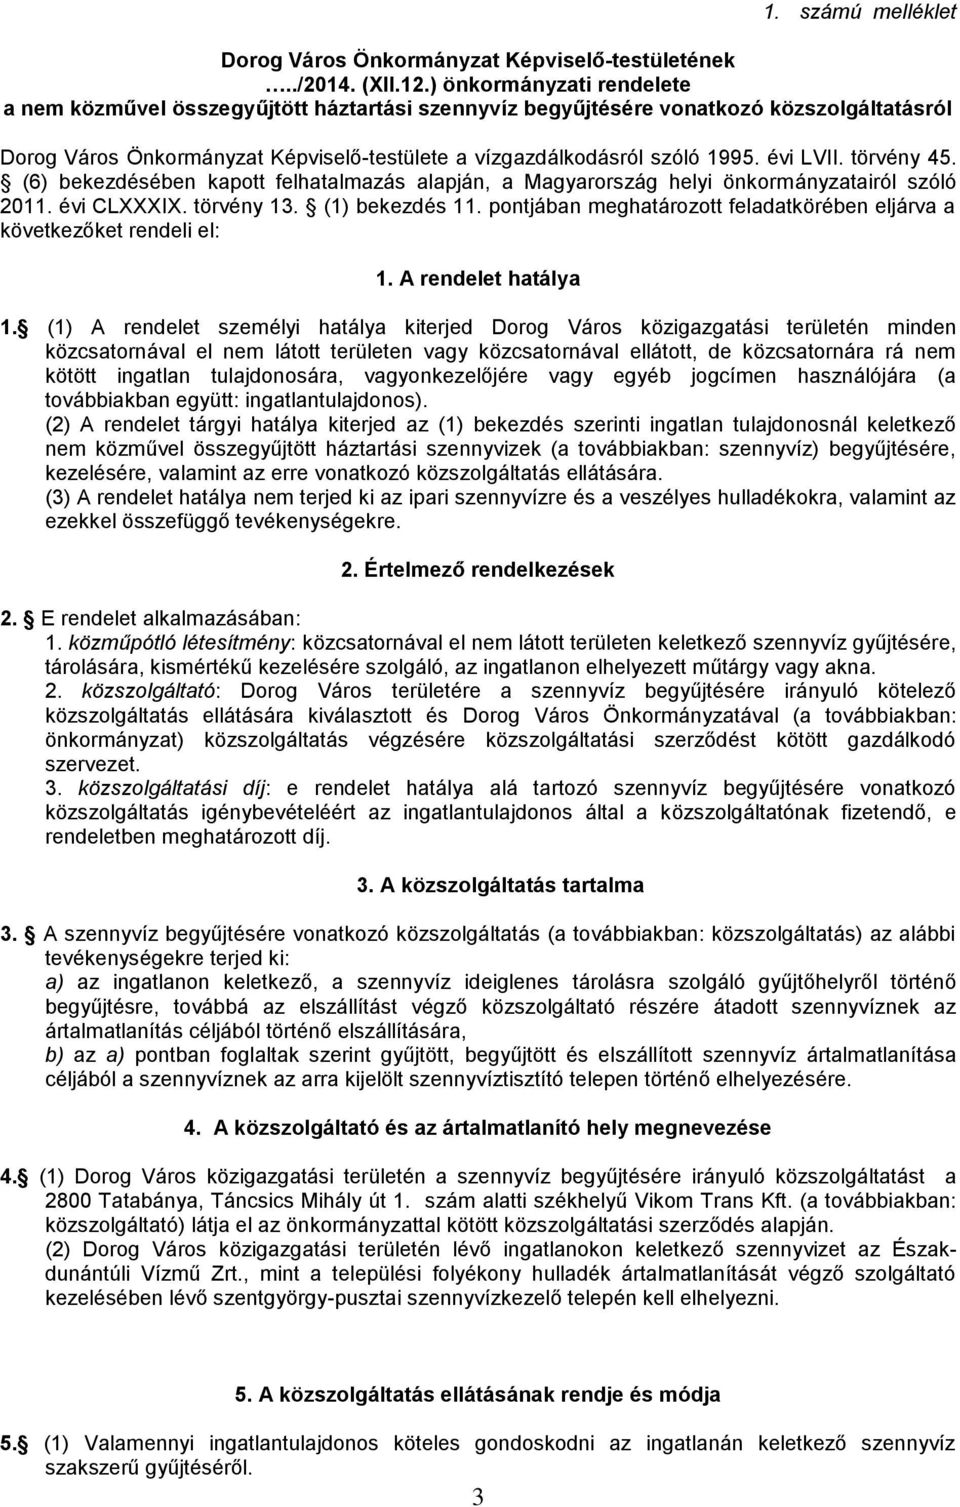 évi LVII. törvény 45. (6) bekezdésében kapott felhatalmazás alapján, a Magyarország helyi önkormányzatairól szóló 2011. évi CLXXXIX. törvény 13. (1) bekezdés 11.